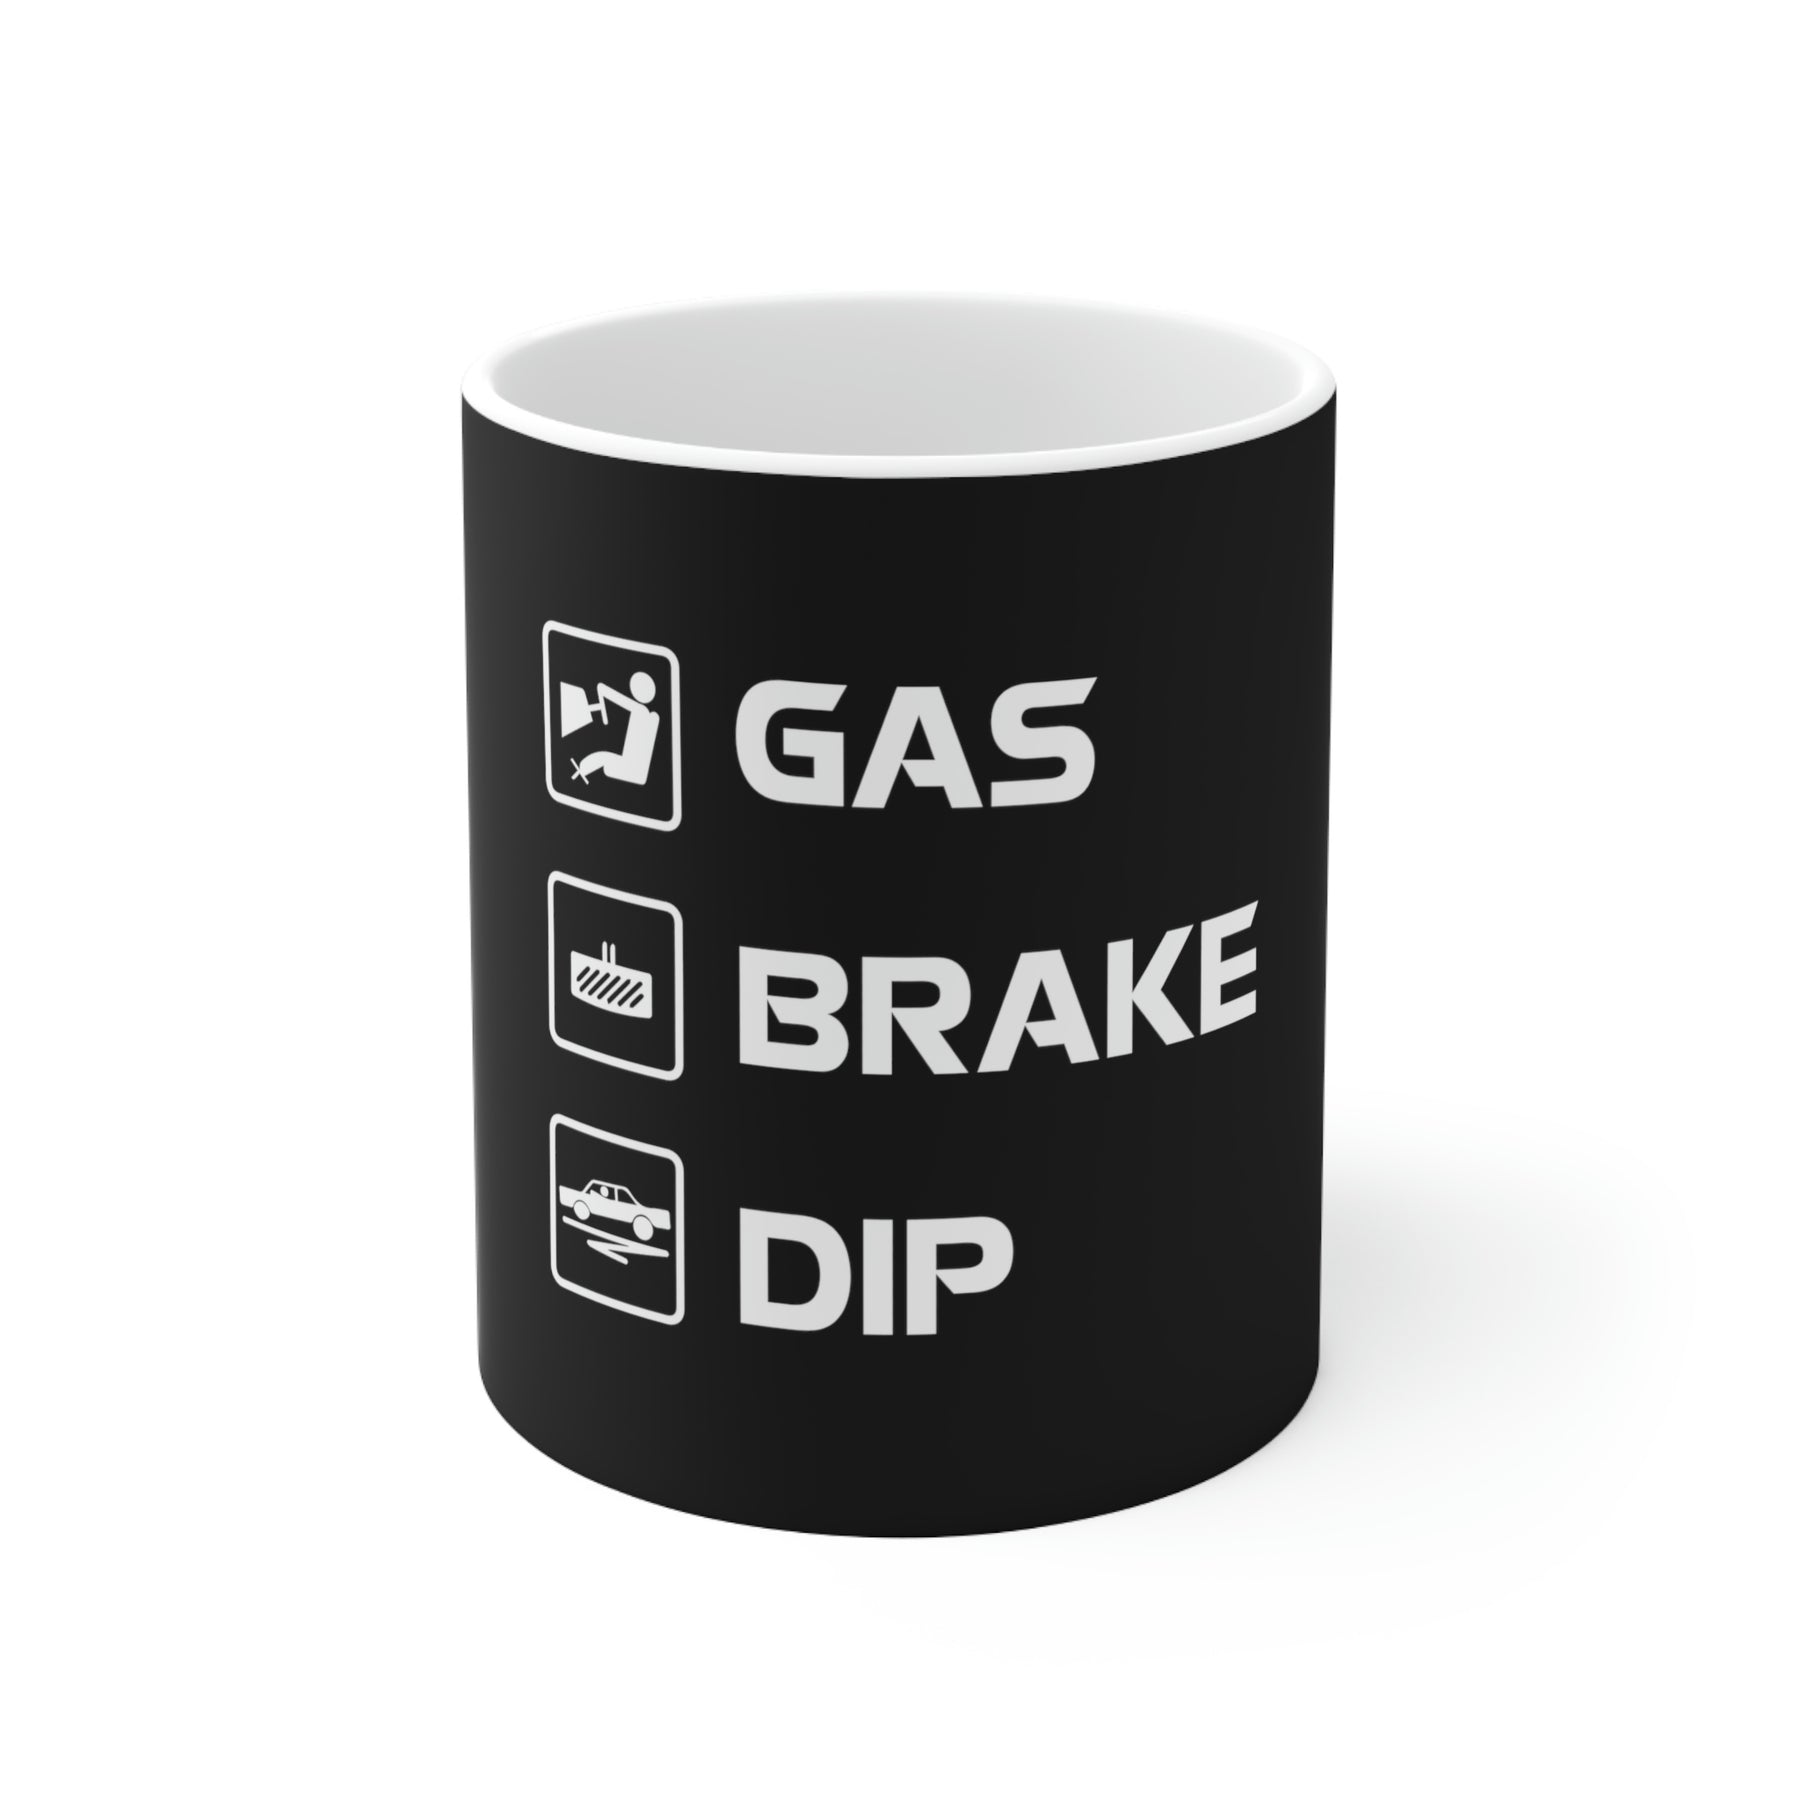 Gas Brake Dip Beverage Mug, 11oz